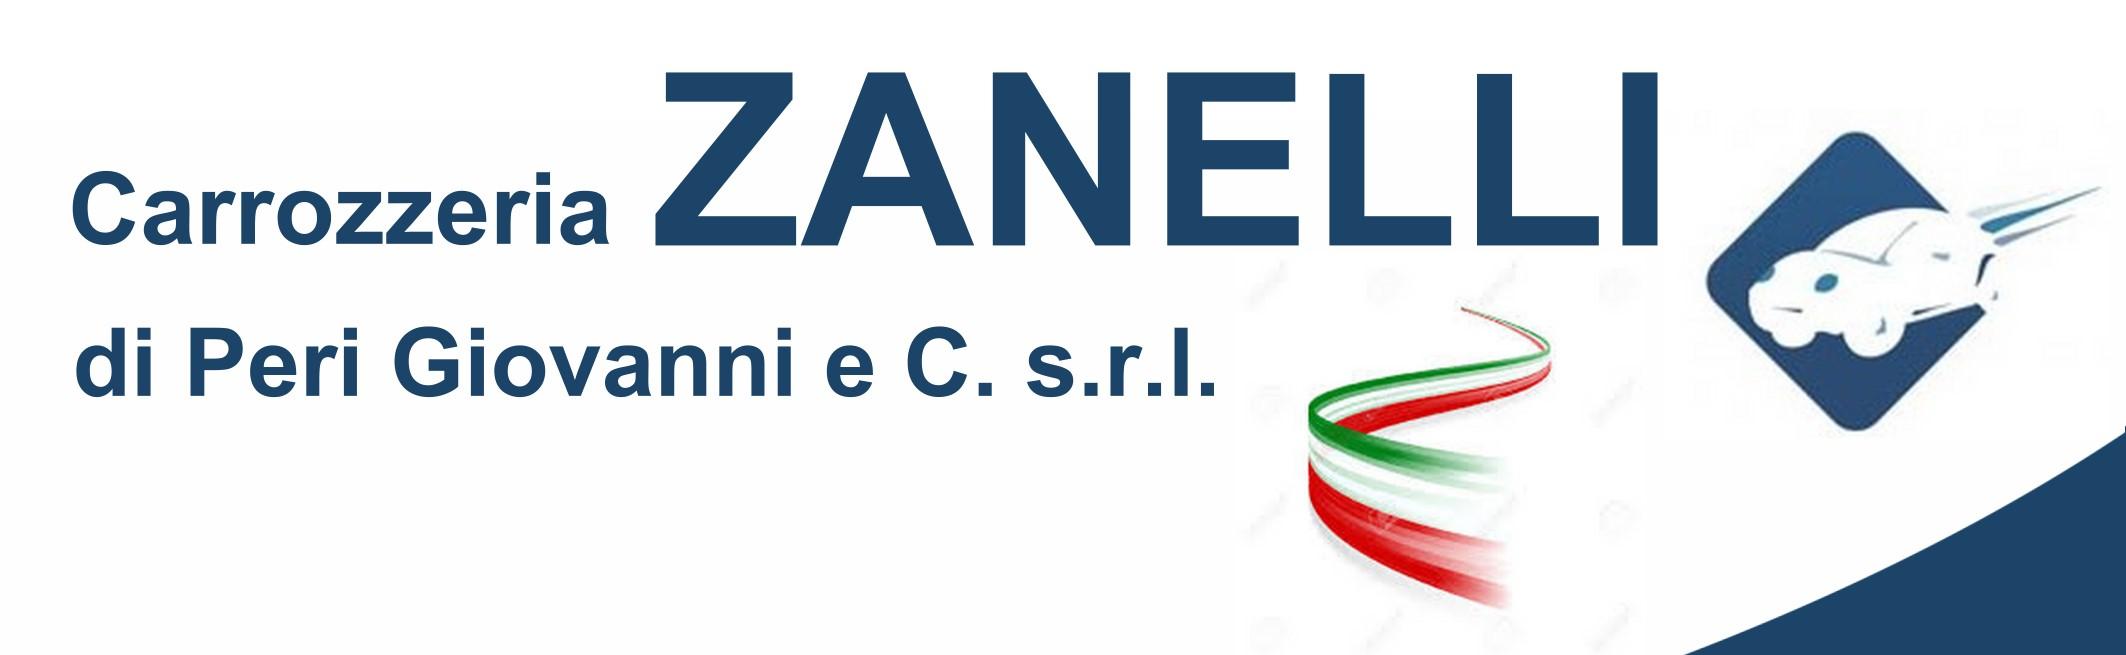 Carrozzeria Zanelli s.r.l.